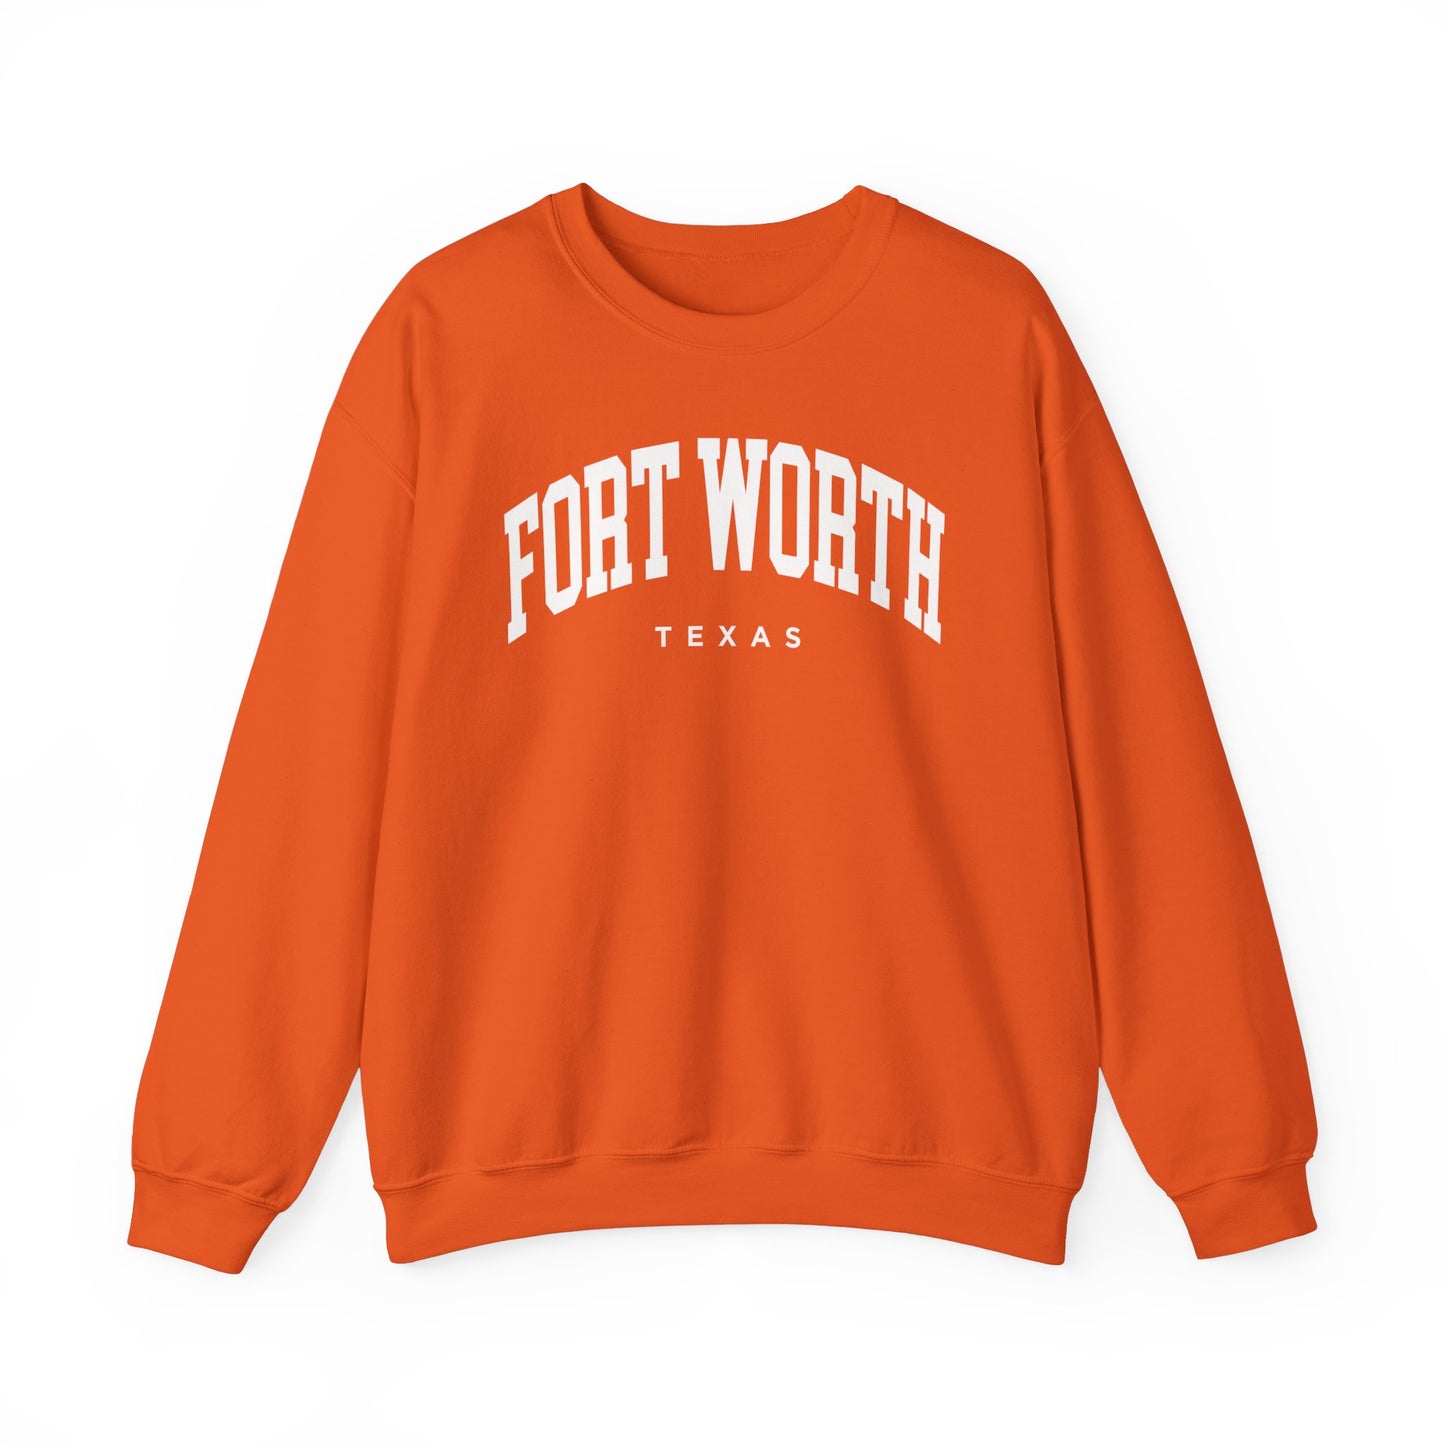 Fort Worth Texas Sweatshirt